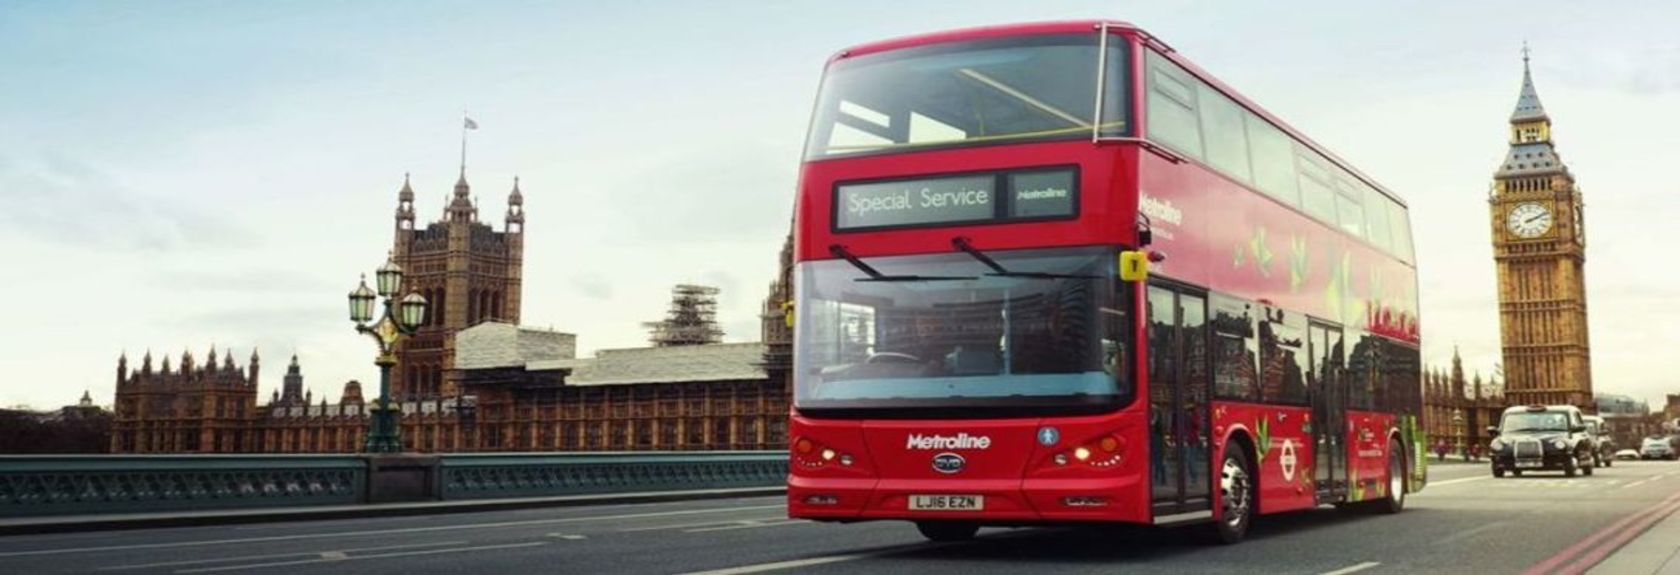 Se você quer fazer uma viagem para Londres e está procurando transporte para a capital inglesa, você vai procurar rapidamente por passagens de avião ou de trem para Londres. Mas há uma maneira de viajar para Londres que muitas pessoas esquecem, e que é de ônibus. A maior vantagem da viagem de ônibus para Londres é o preço. Com alguns fornecedores como o FlixBus você pode viajar para Londres de ônibus a partir de 34 euros, 206 reais de ida. Uma viagem de ônibus para Londres não só é mais vantajosa em comparação com o avião ou trem, como também é uma forma confortável de viajar, pois as viagens são feitas com ônibus confortáveis.